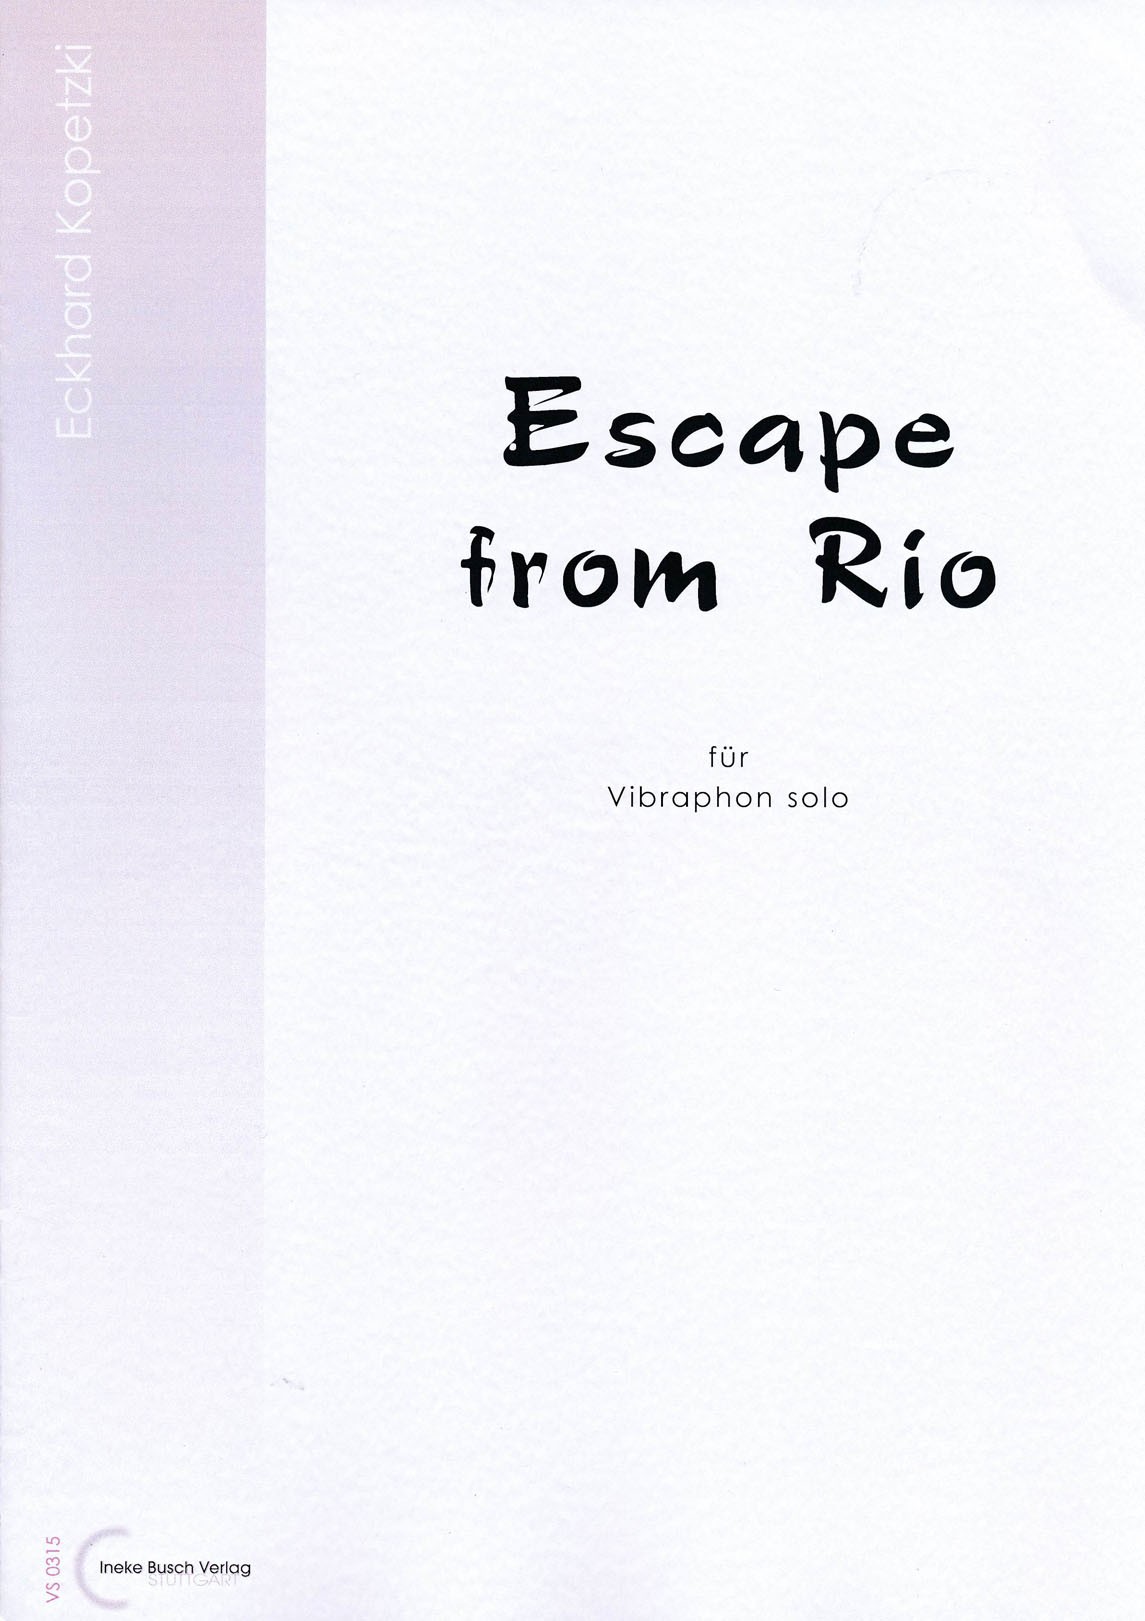 Escape from Rio by Eckhard Kopetzki